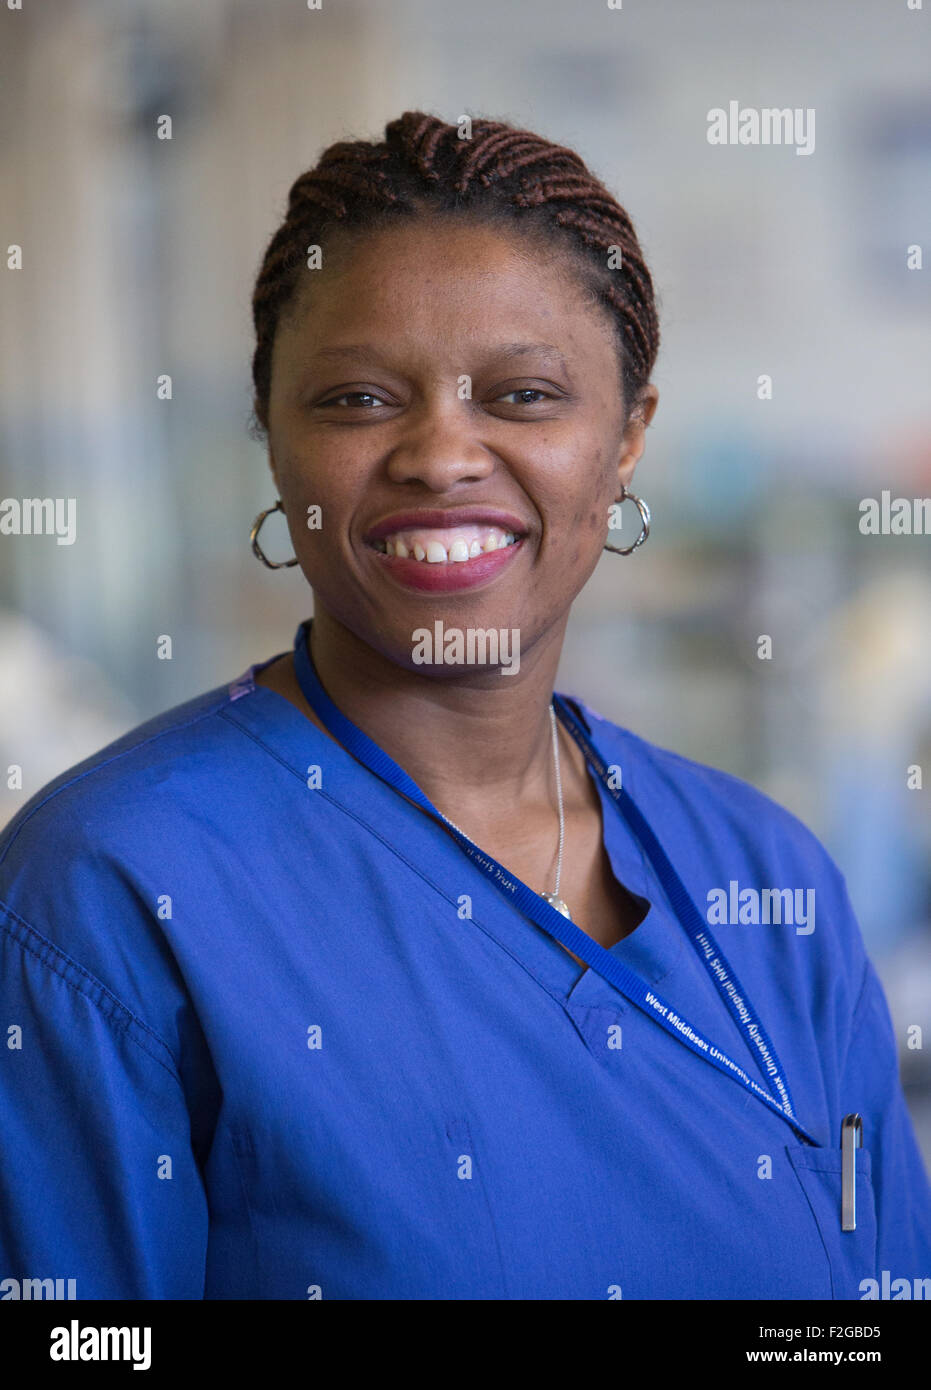 An NHS nurse smiling wearing scrubs Stock Photo